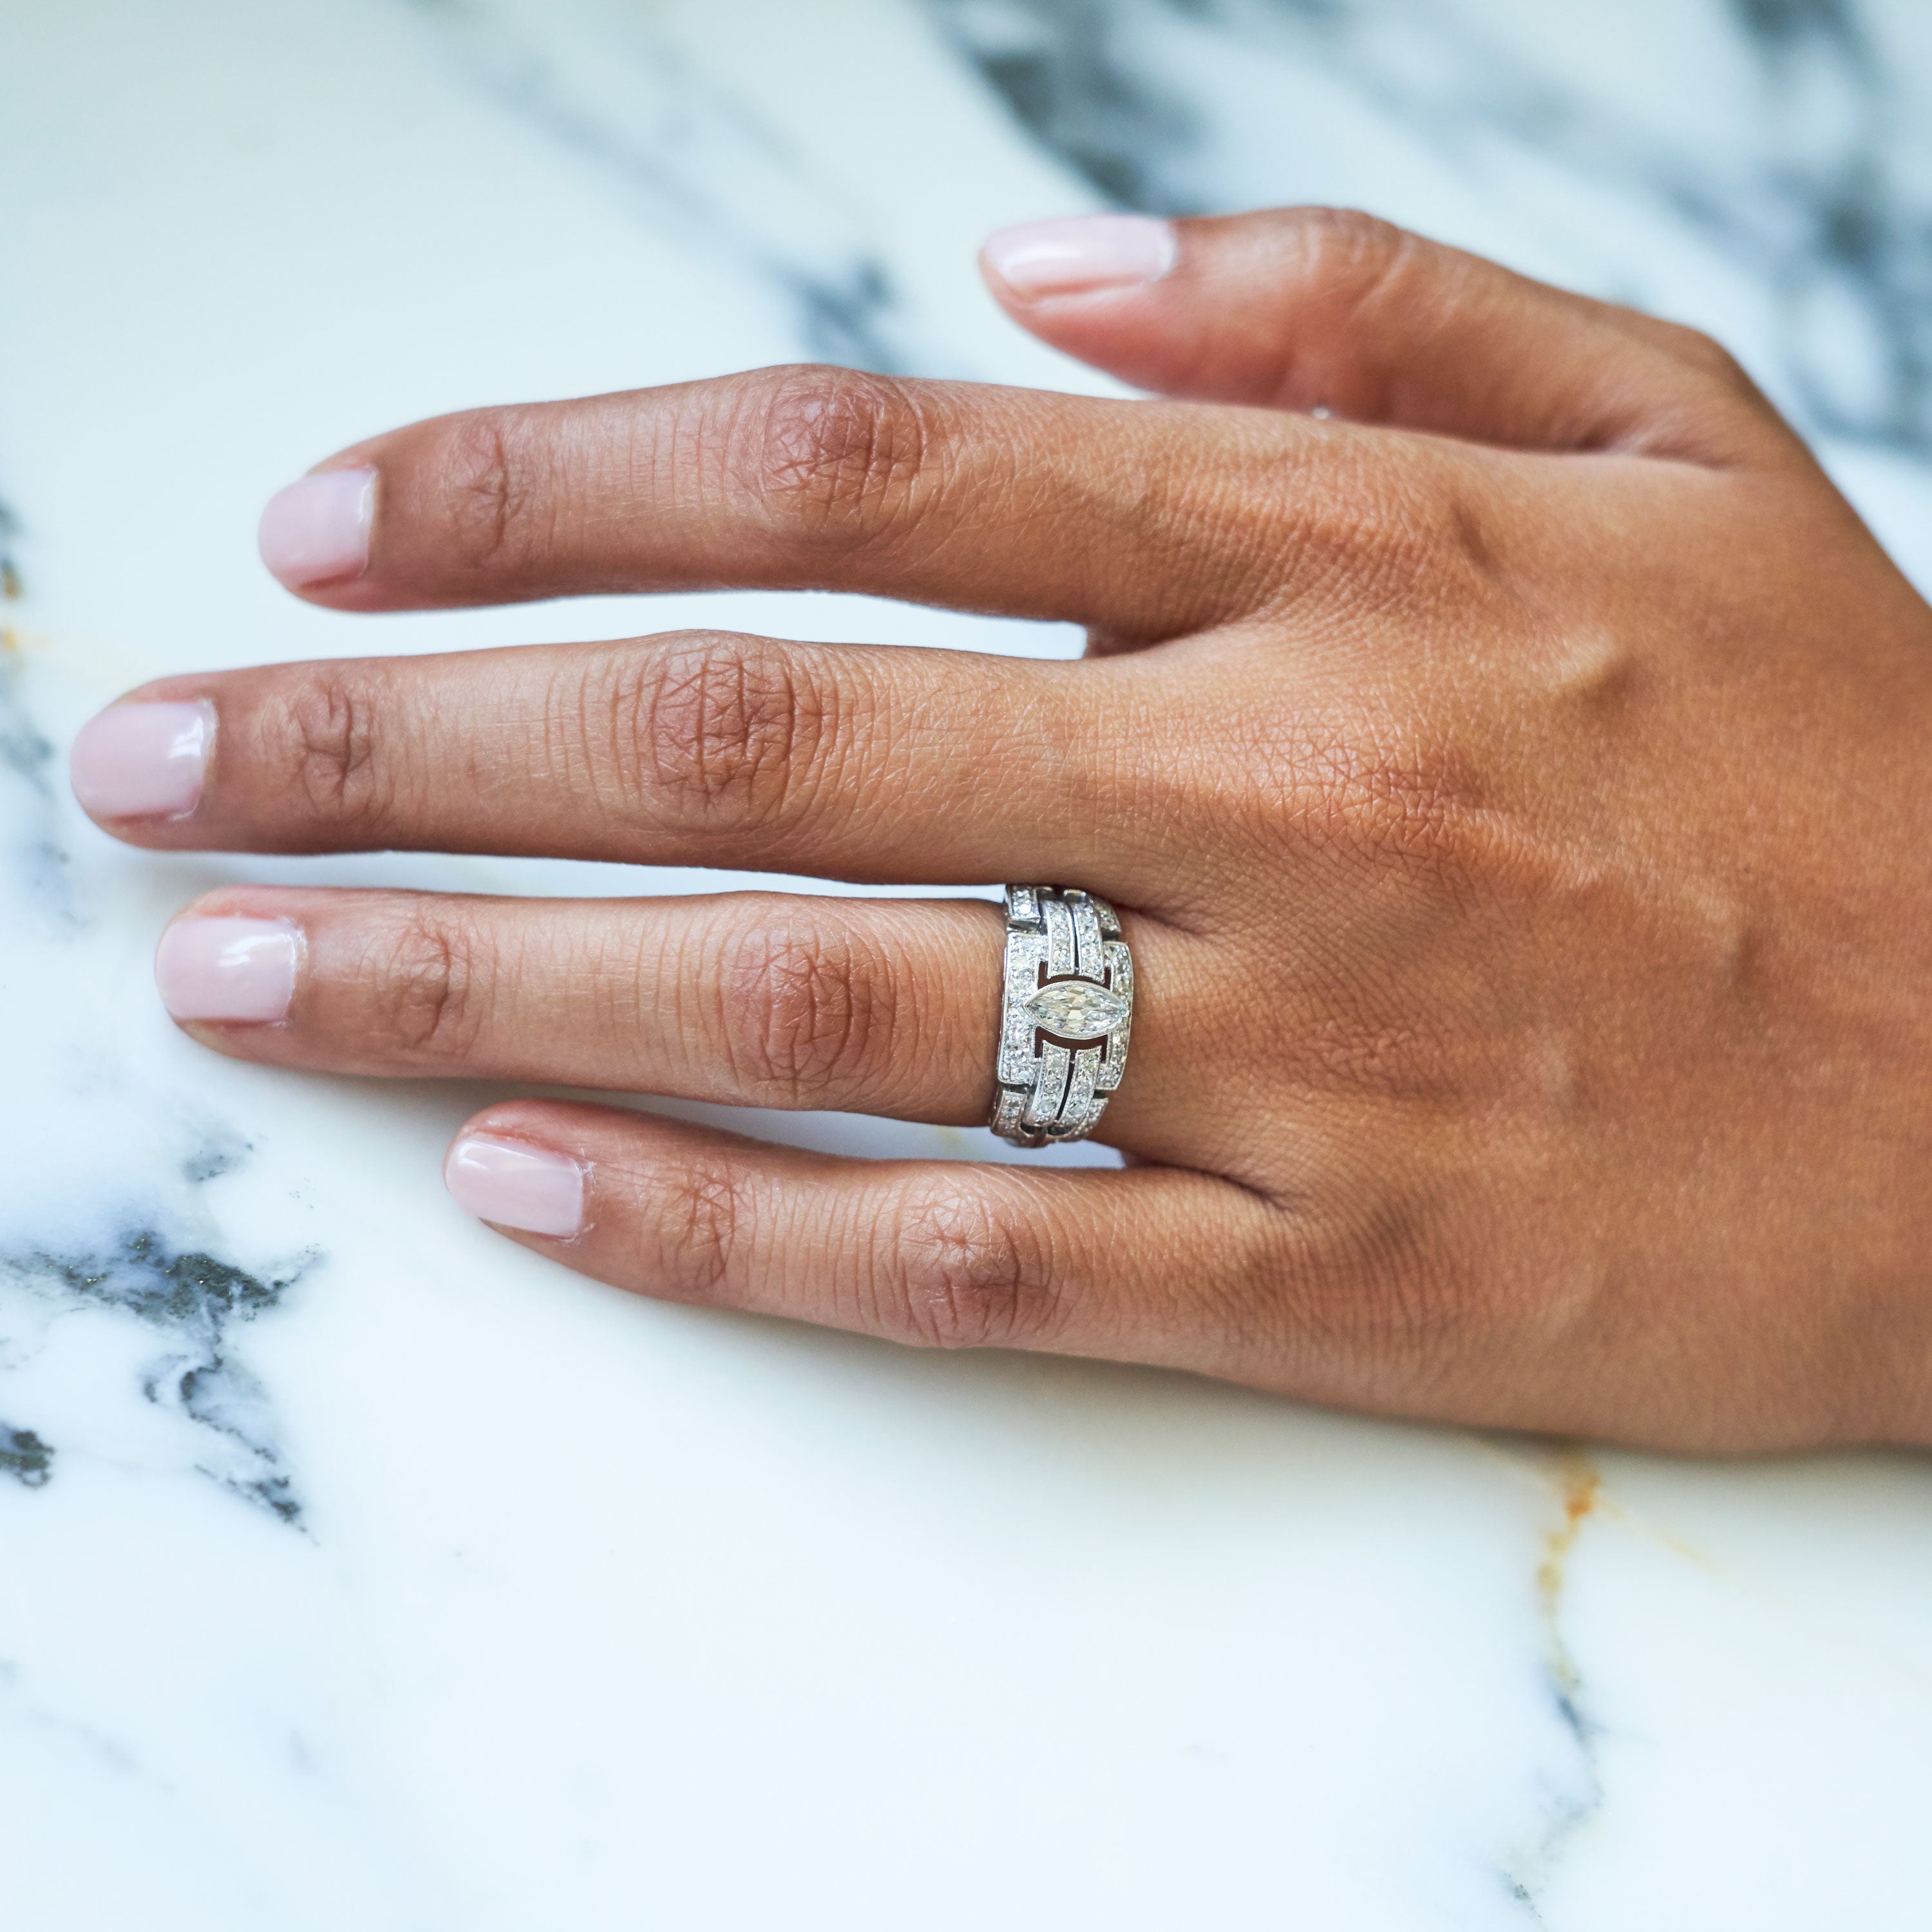 Art Deco Marquise Diamond And Platinum Ring